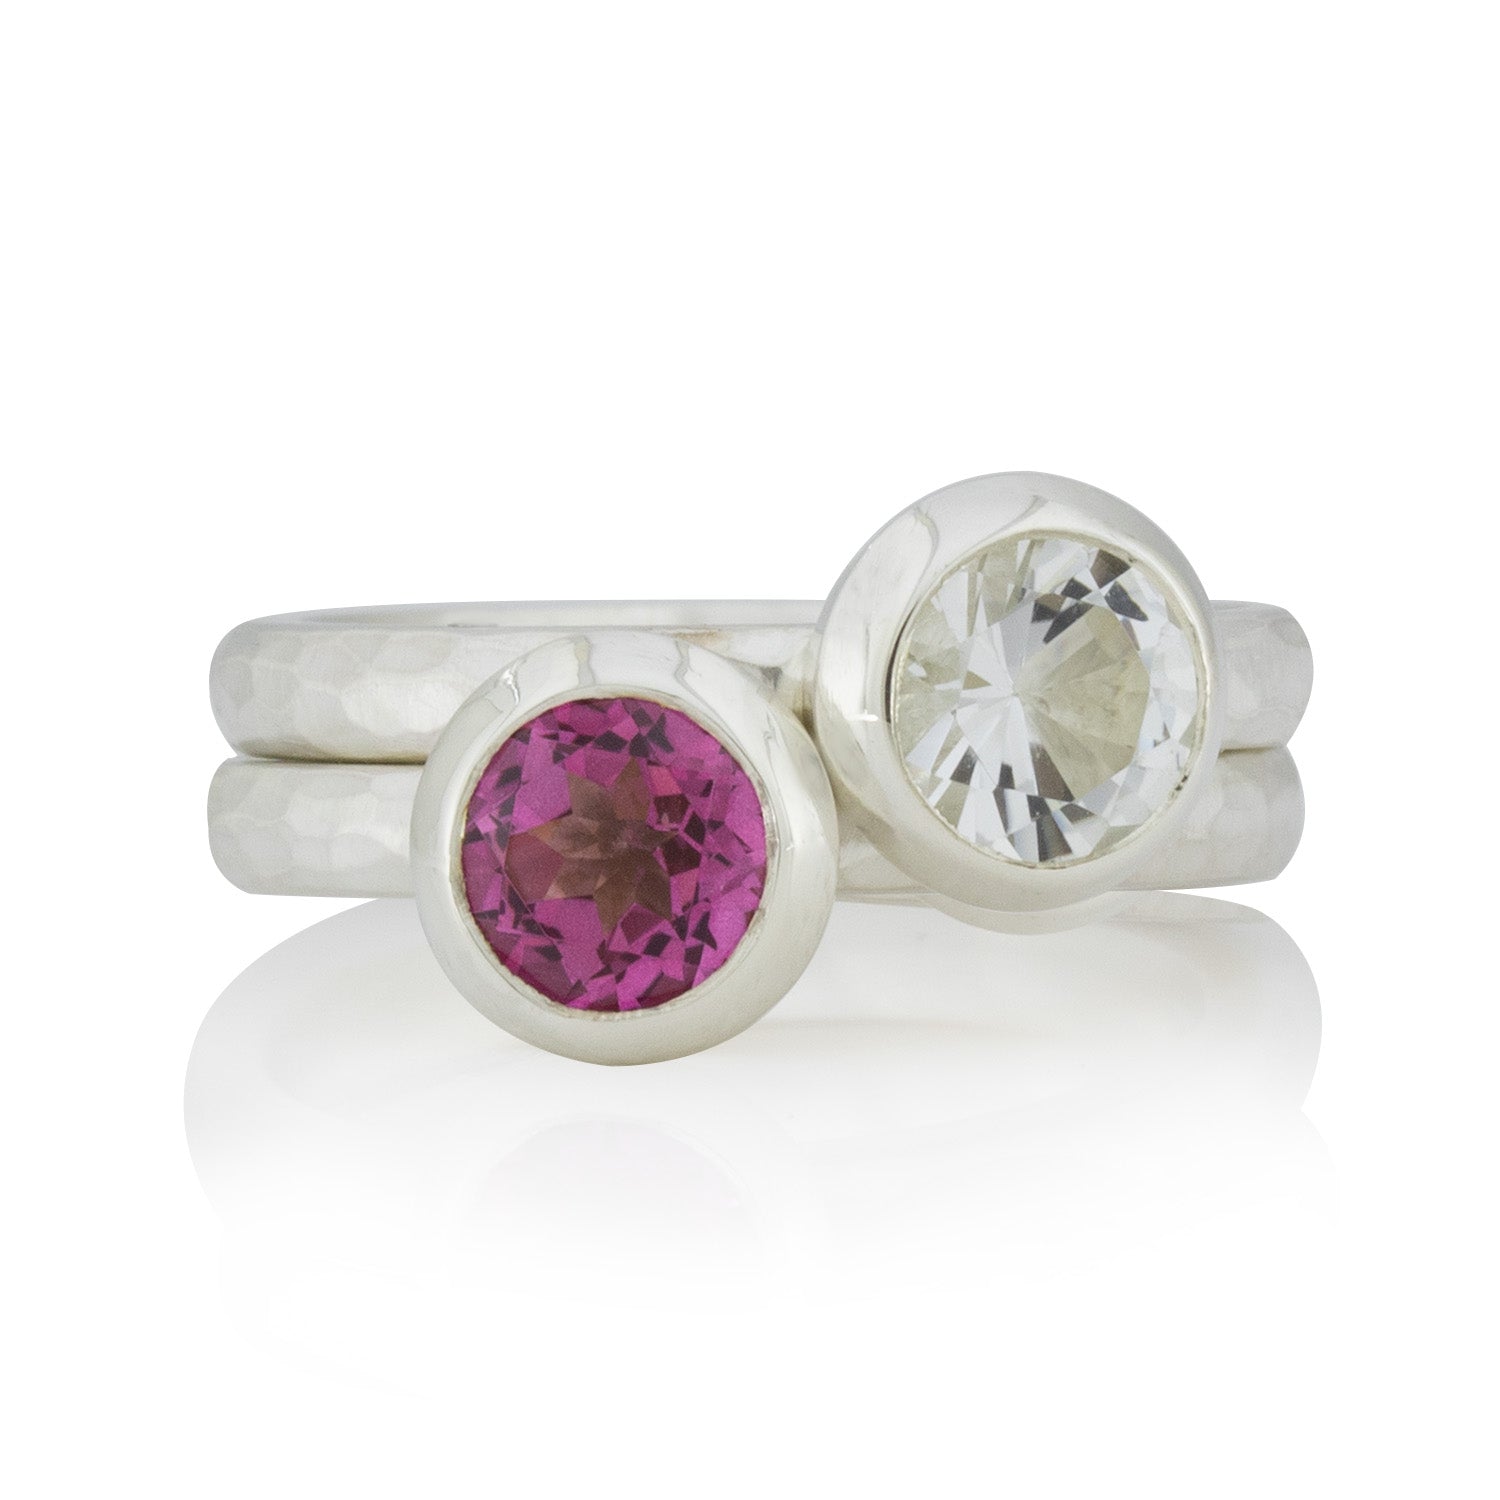 2 Silberring im Set: Geschmiedete Ringe mit Topas, pink, weiß